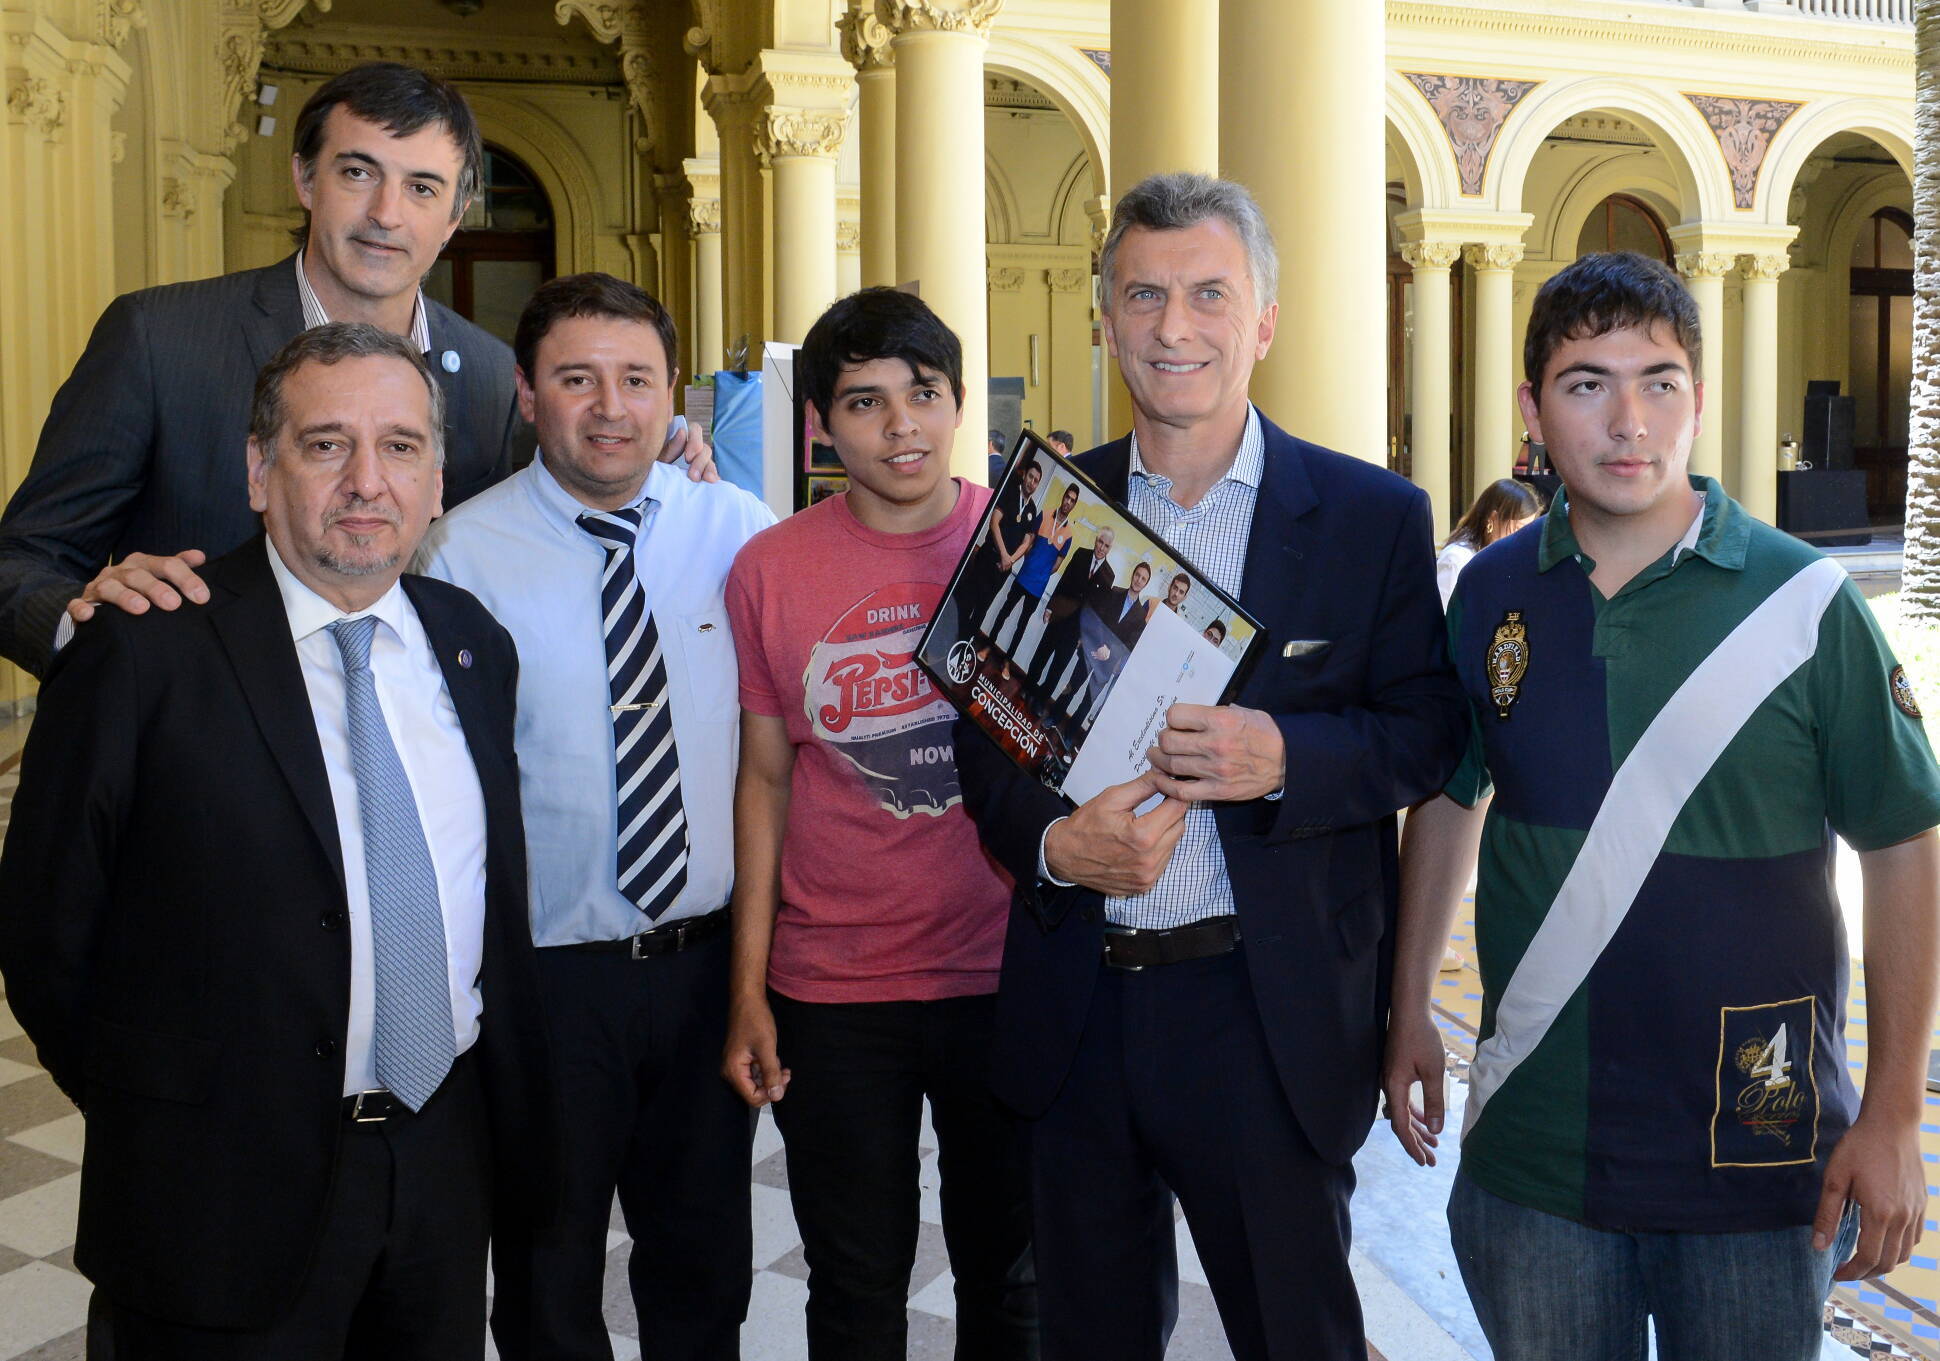 El presidente Macri saludó a alumnos que desarrollaron proyectos de investigación